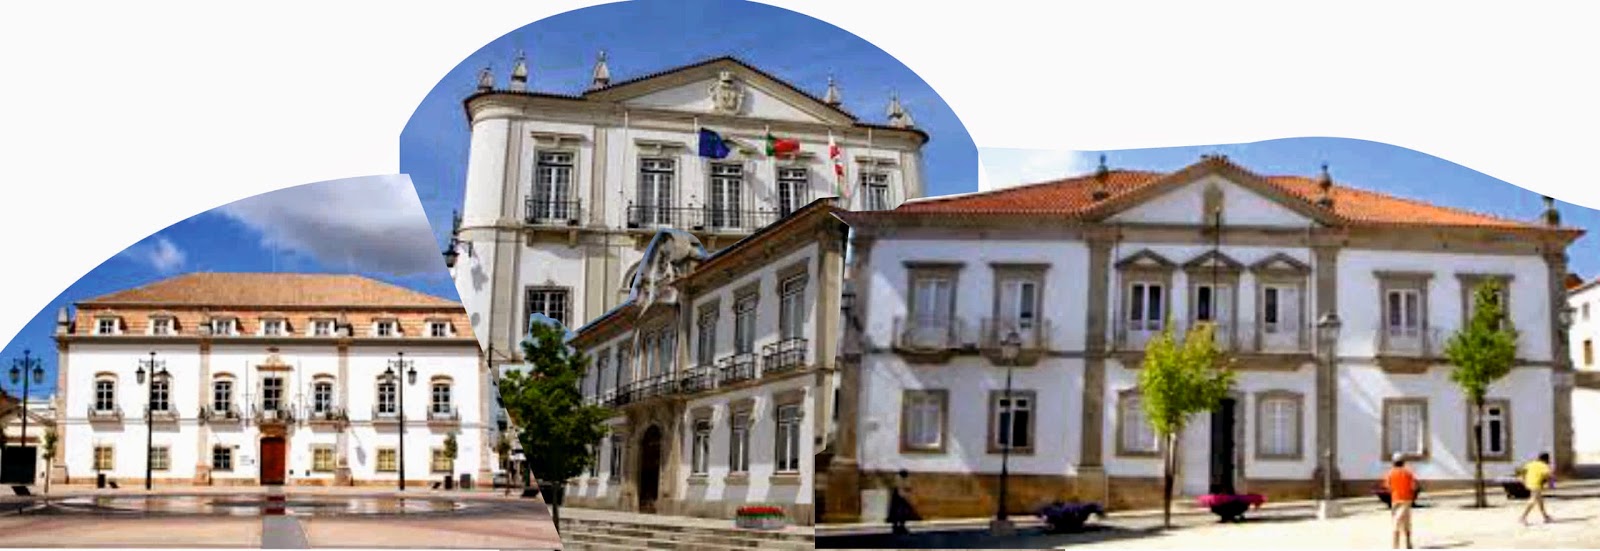 Lista_de_concelhos_portugueses